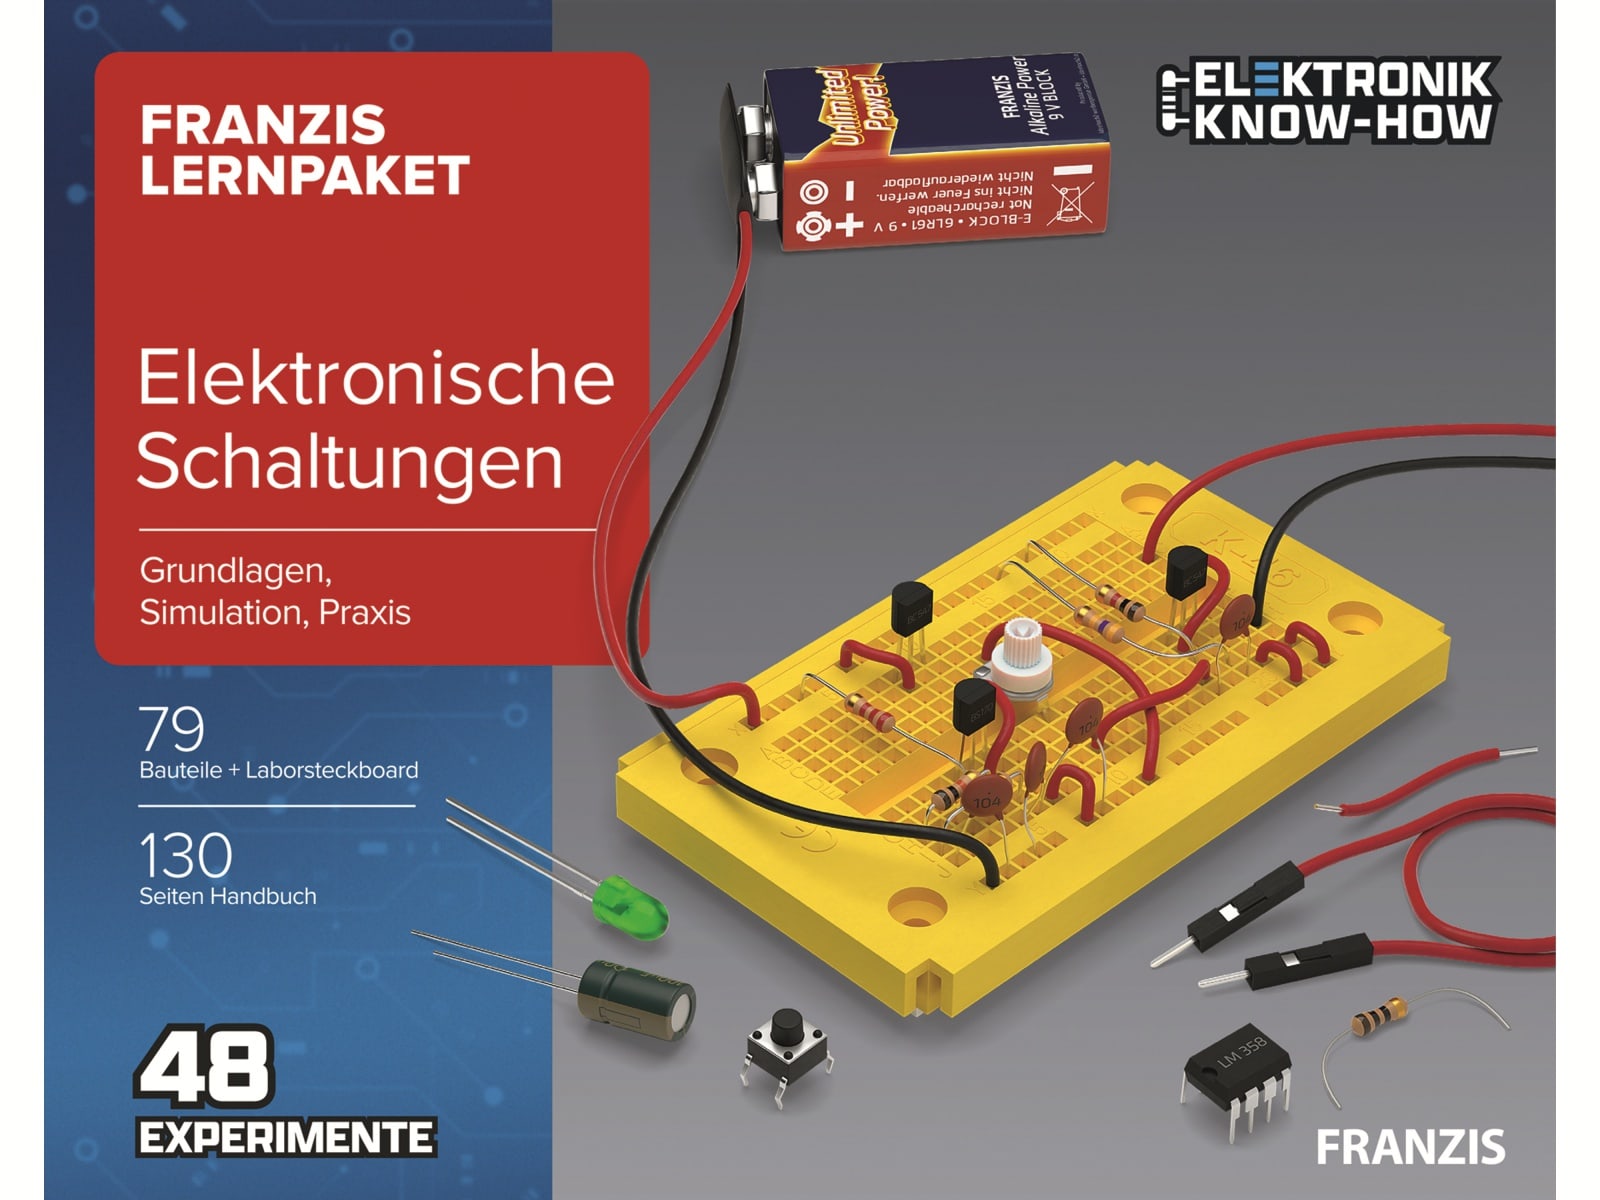  FRANZIS Lernpaket, 67164, Elektronische Schaltungen